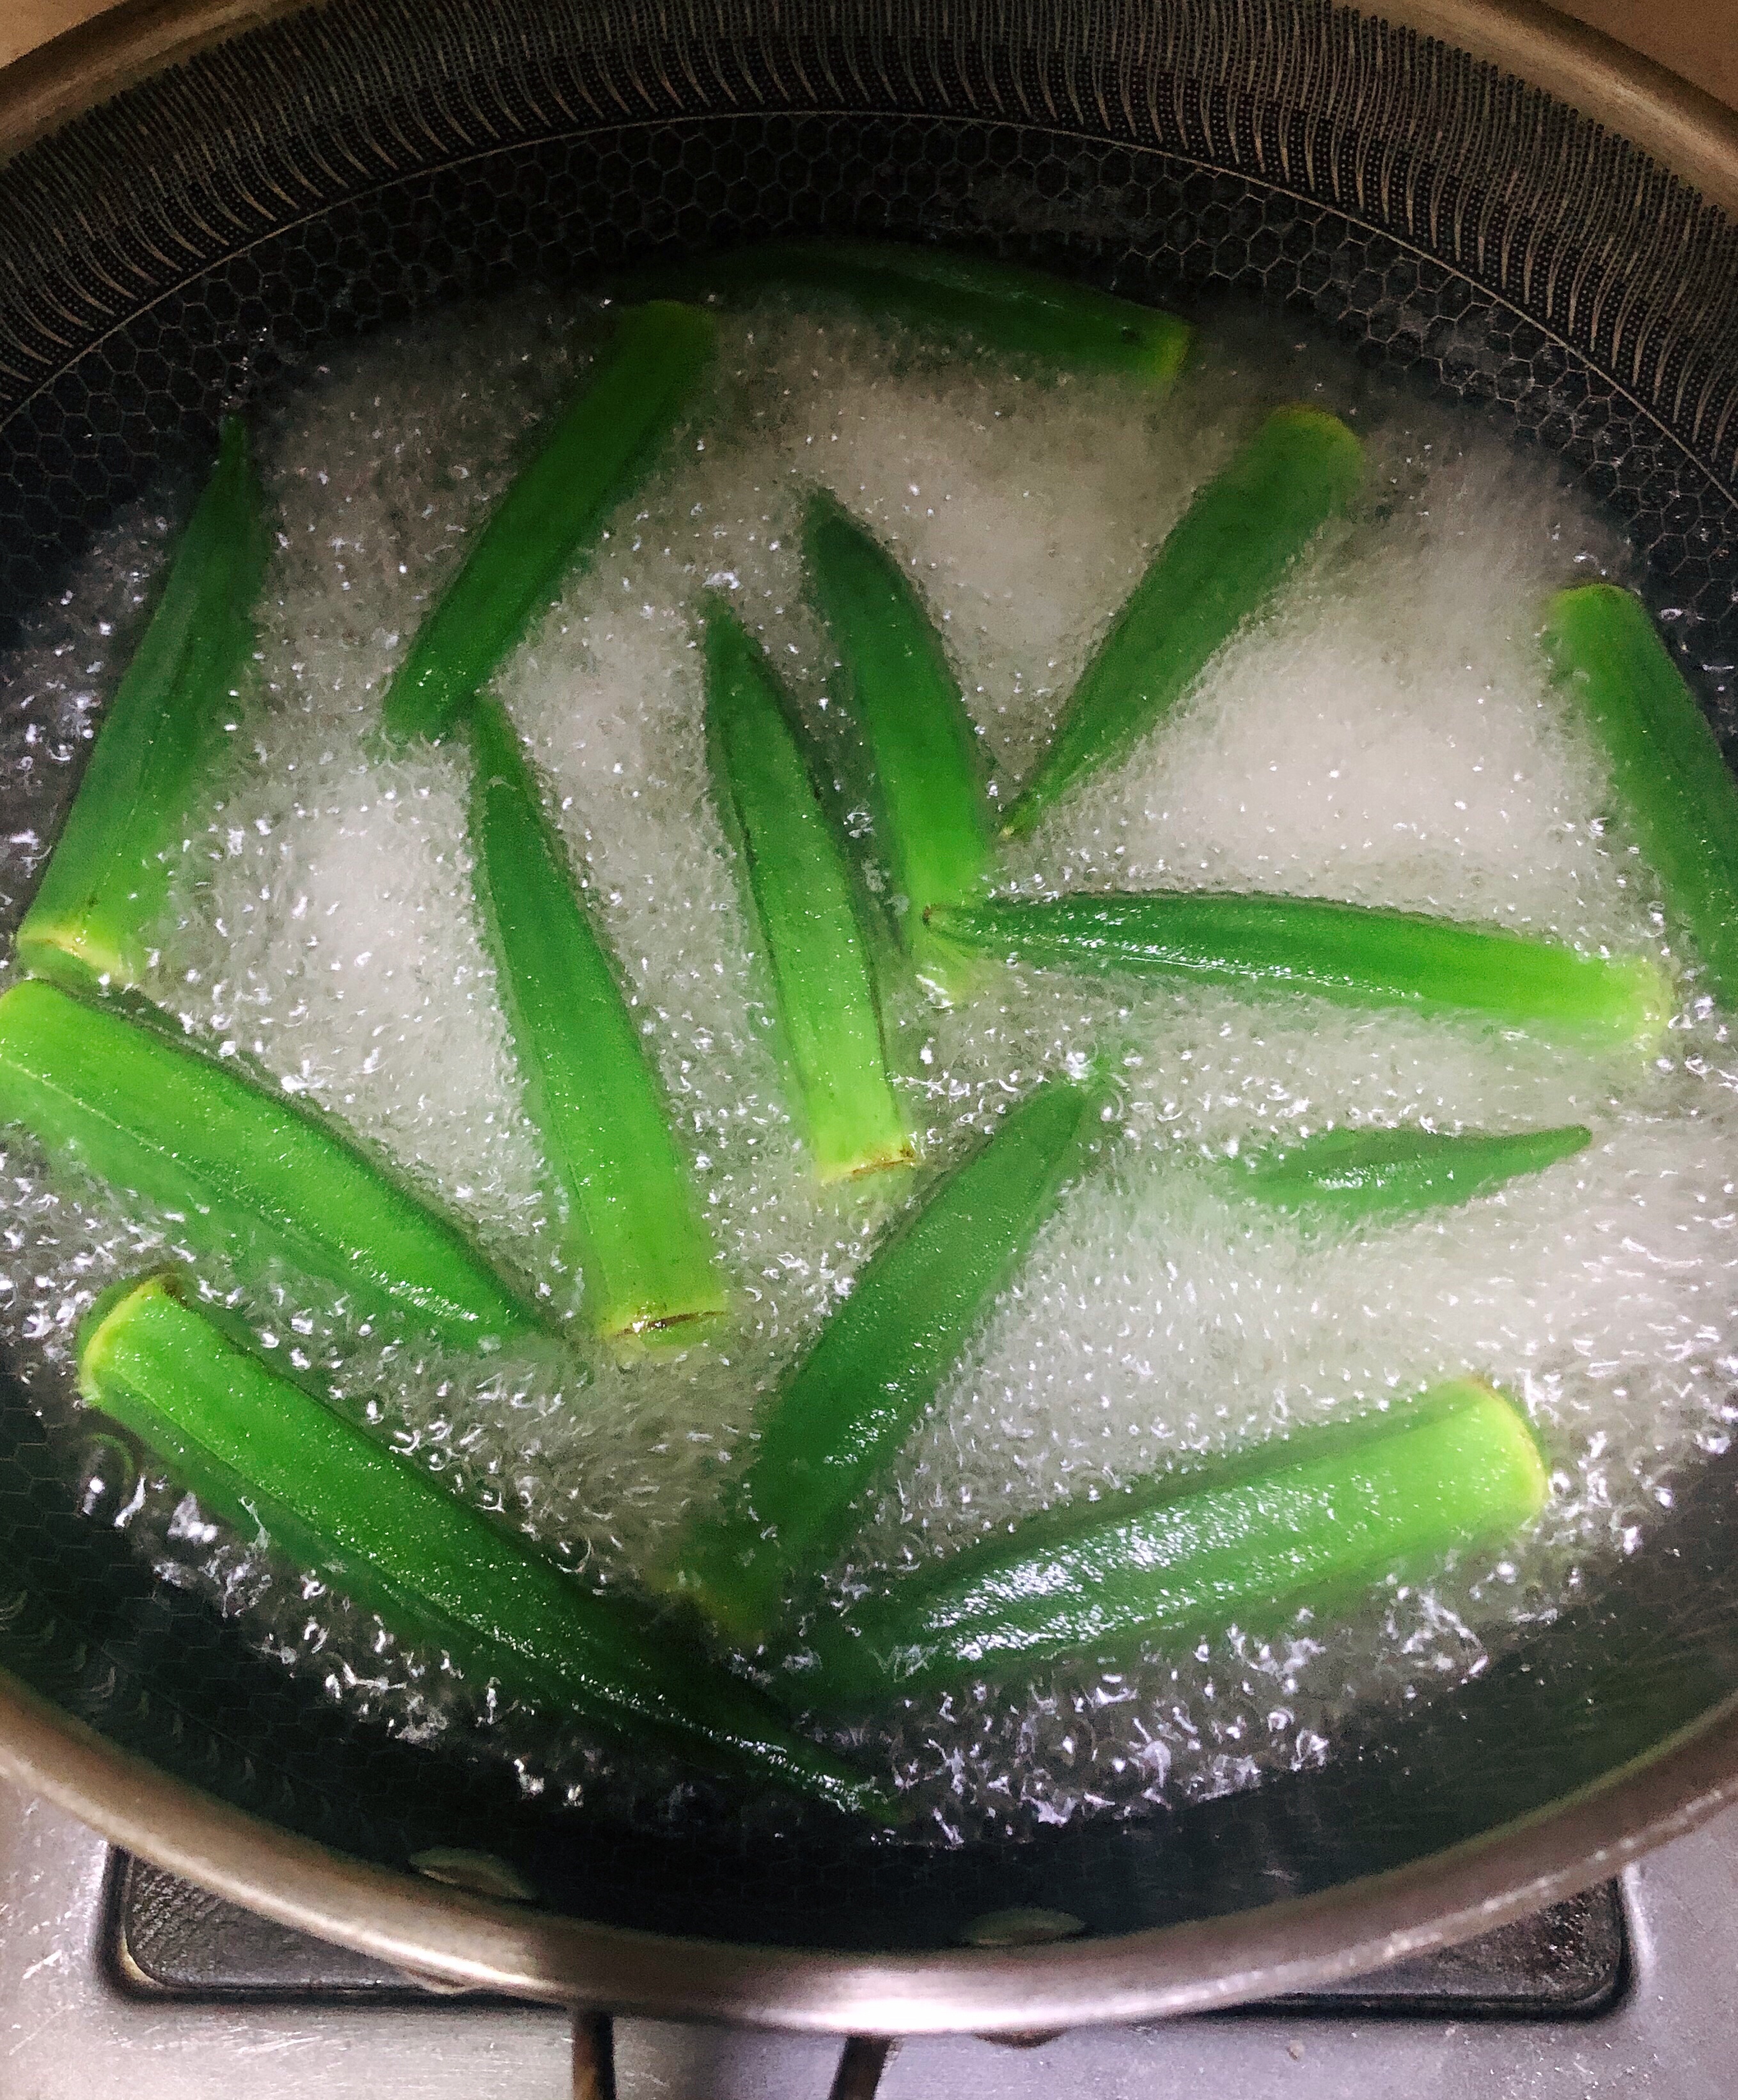 将锅里加水烧开后,秋葵倒进去煮两分钟取出,冲下凉水备用.